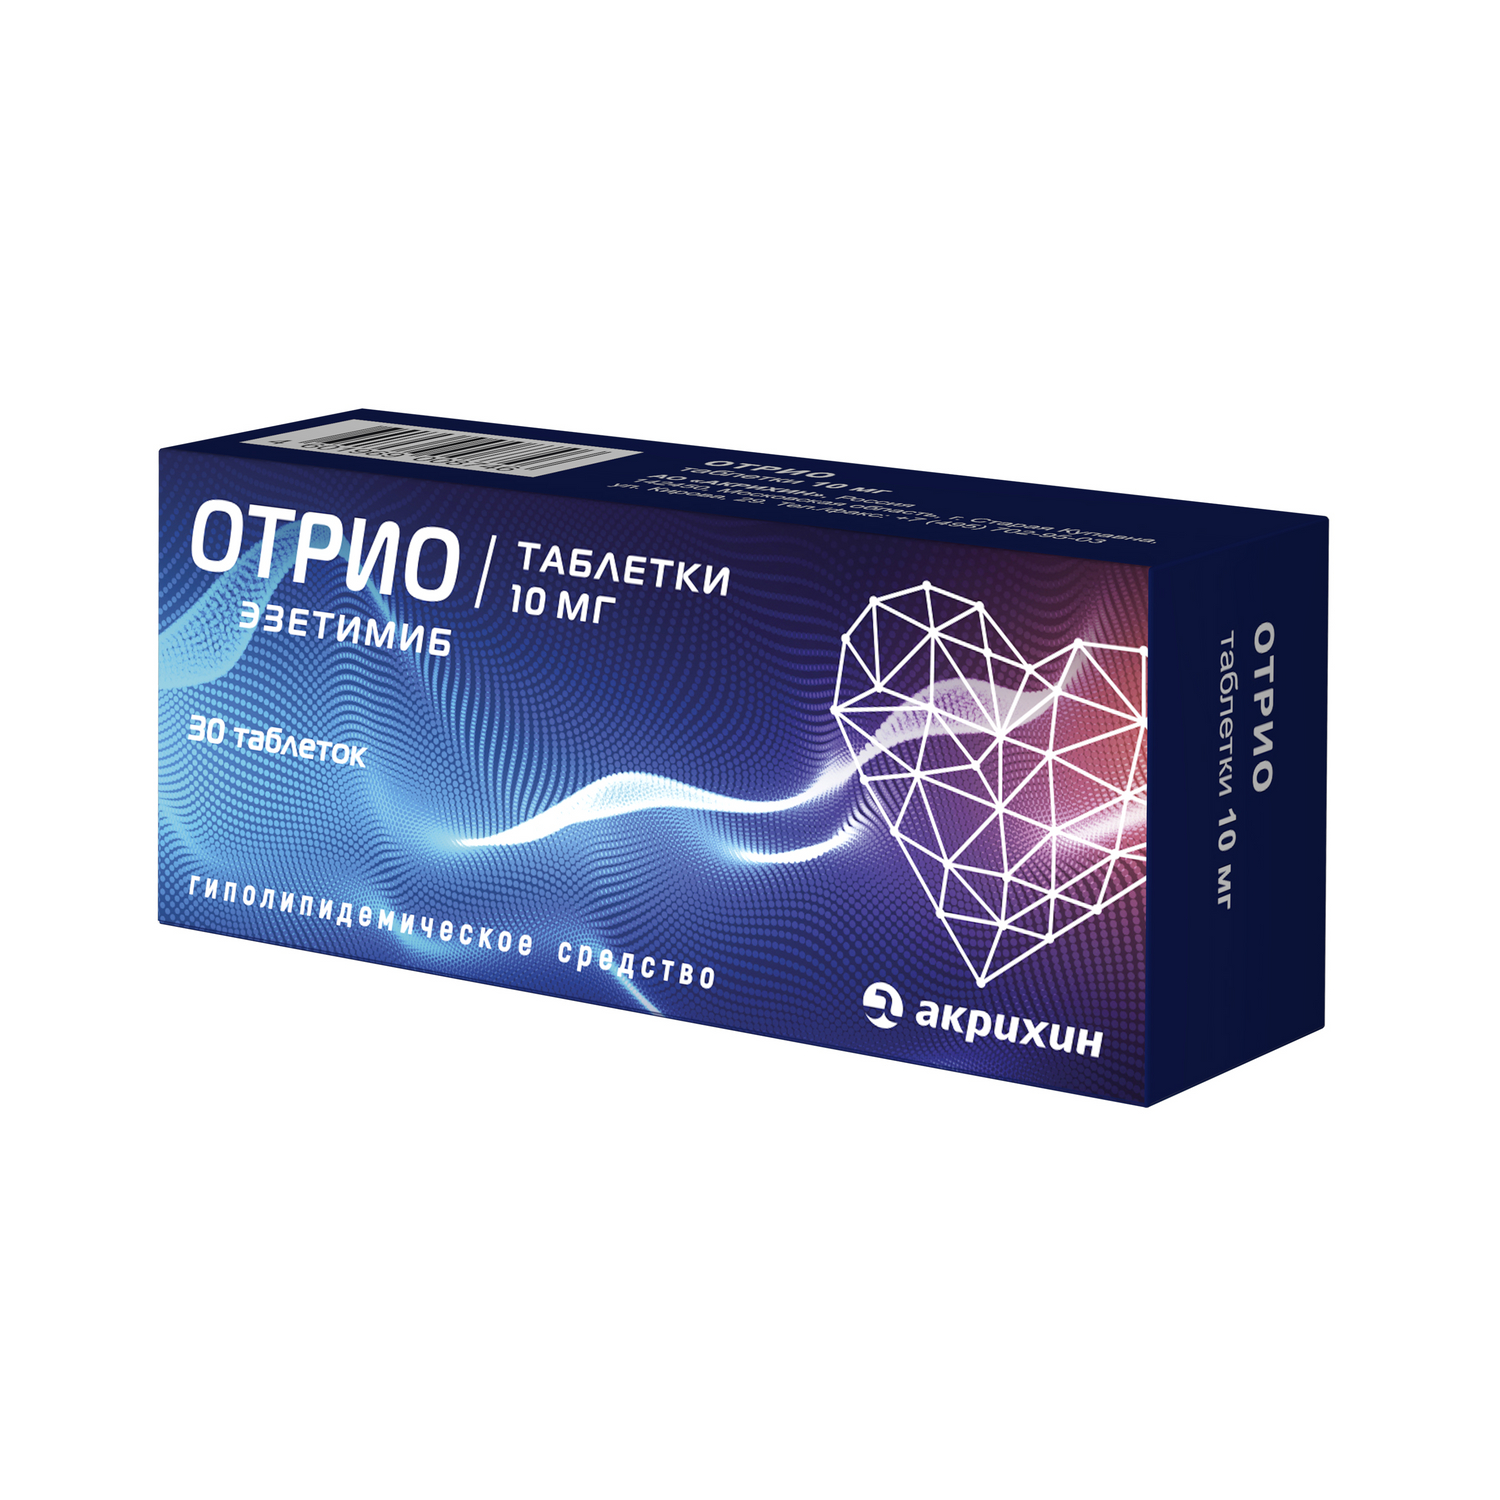 Отрио Таблетки 10 мг 30 шт  по цене 751,0 руб в интернет-аптеке в .